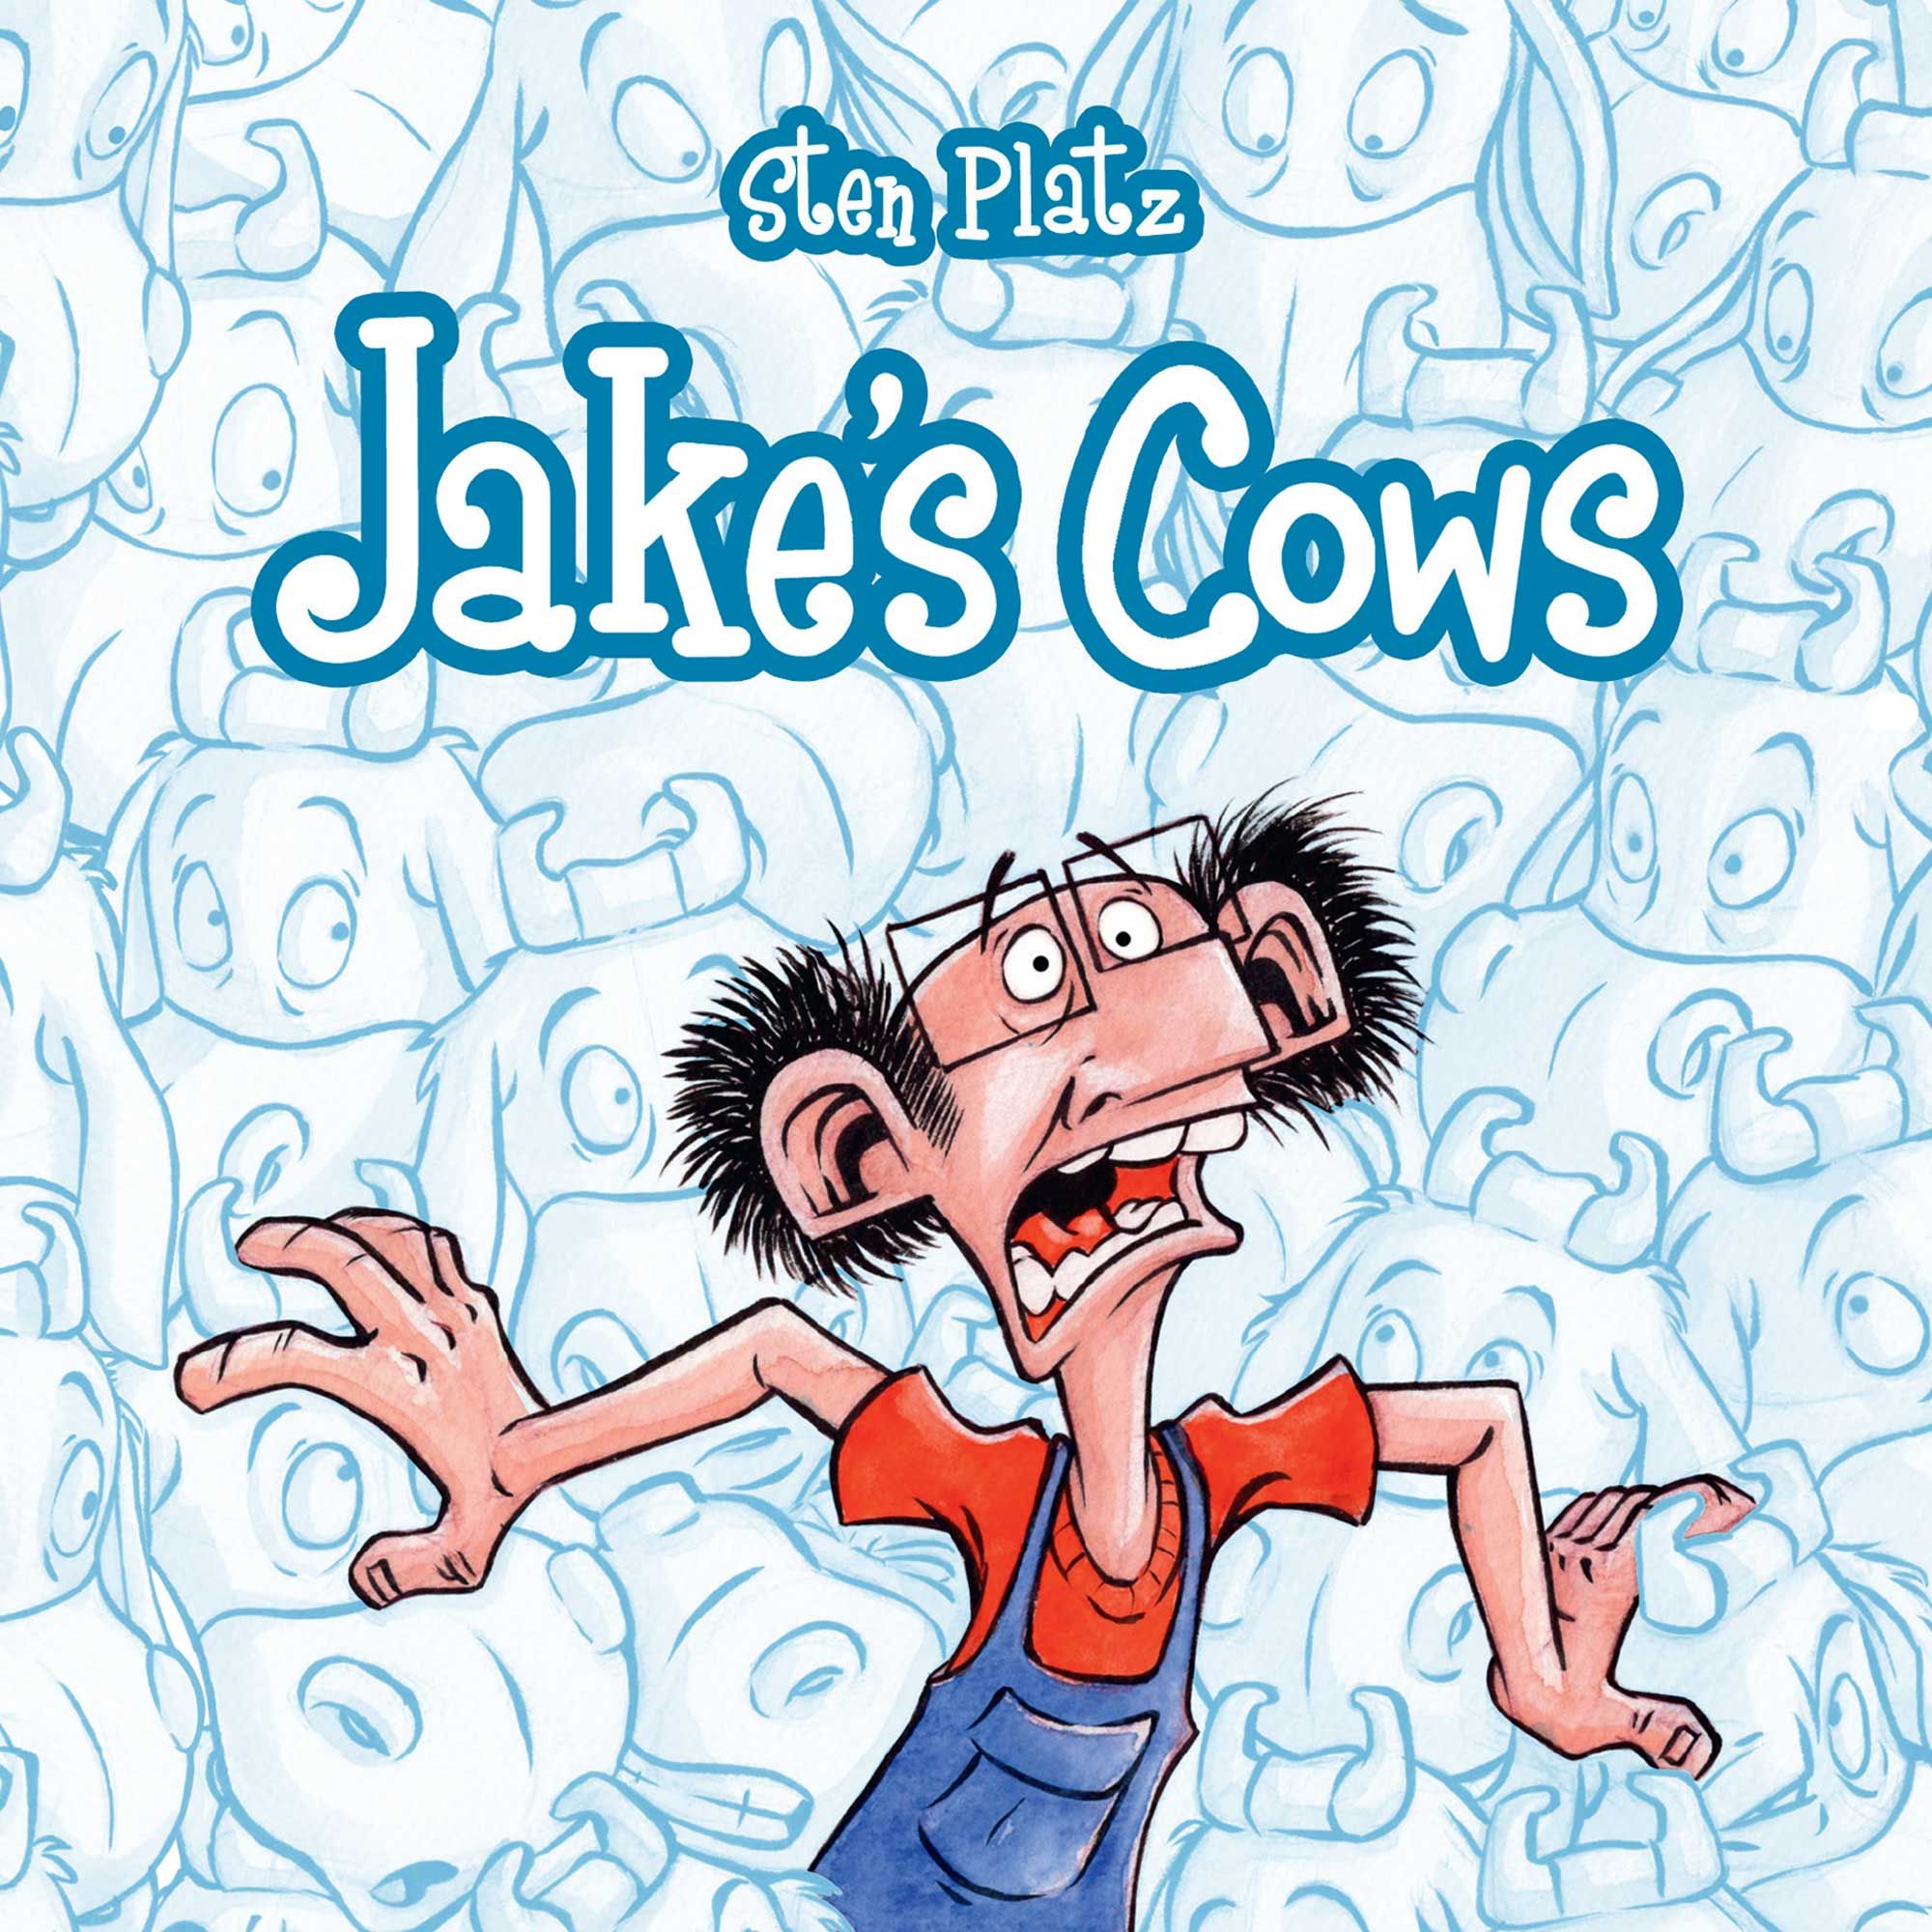 Jake’s Cows, audiobook by Sten Platz